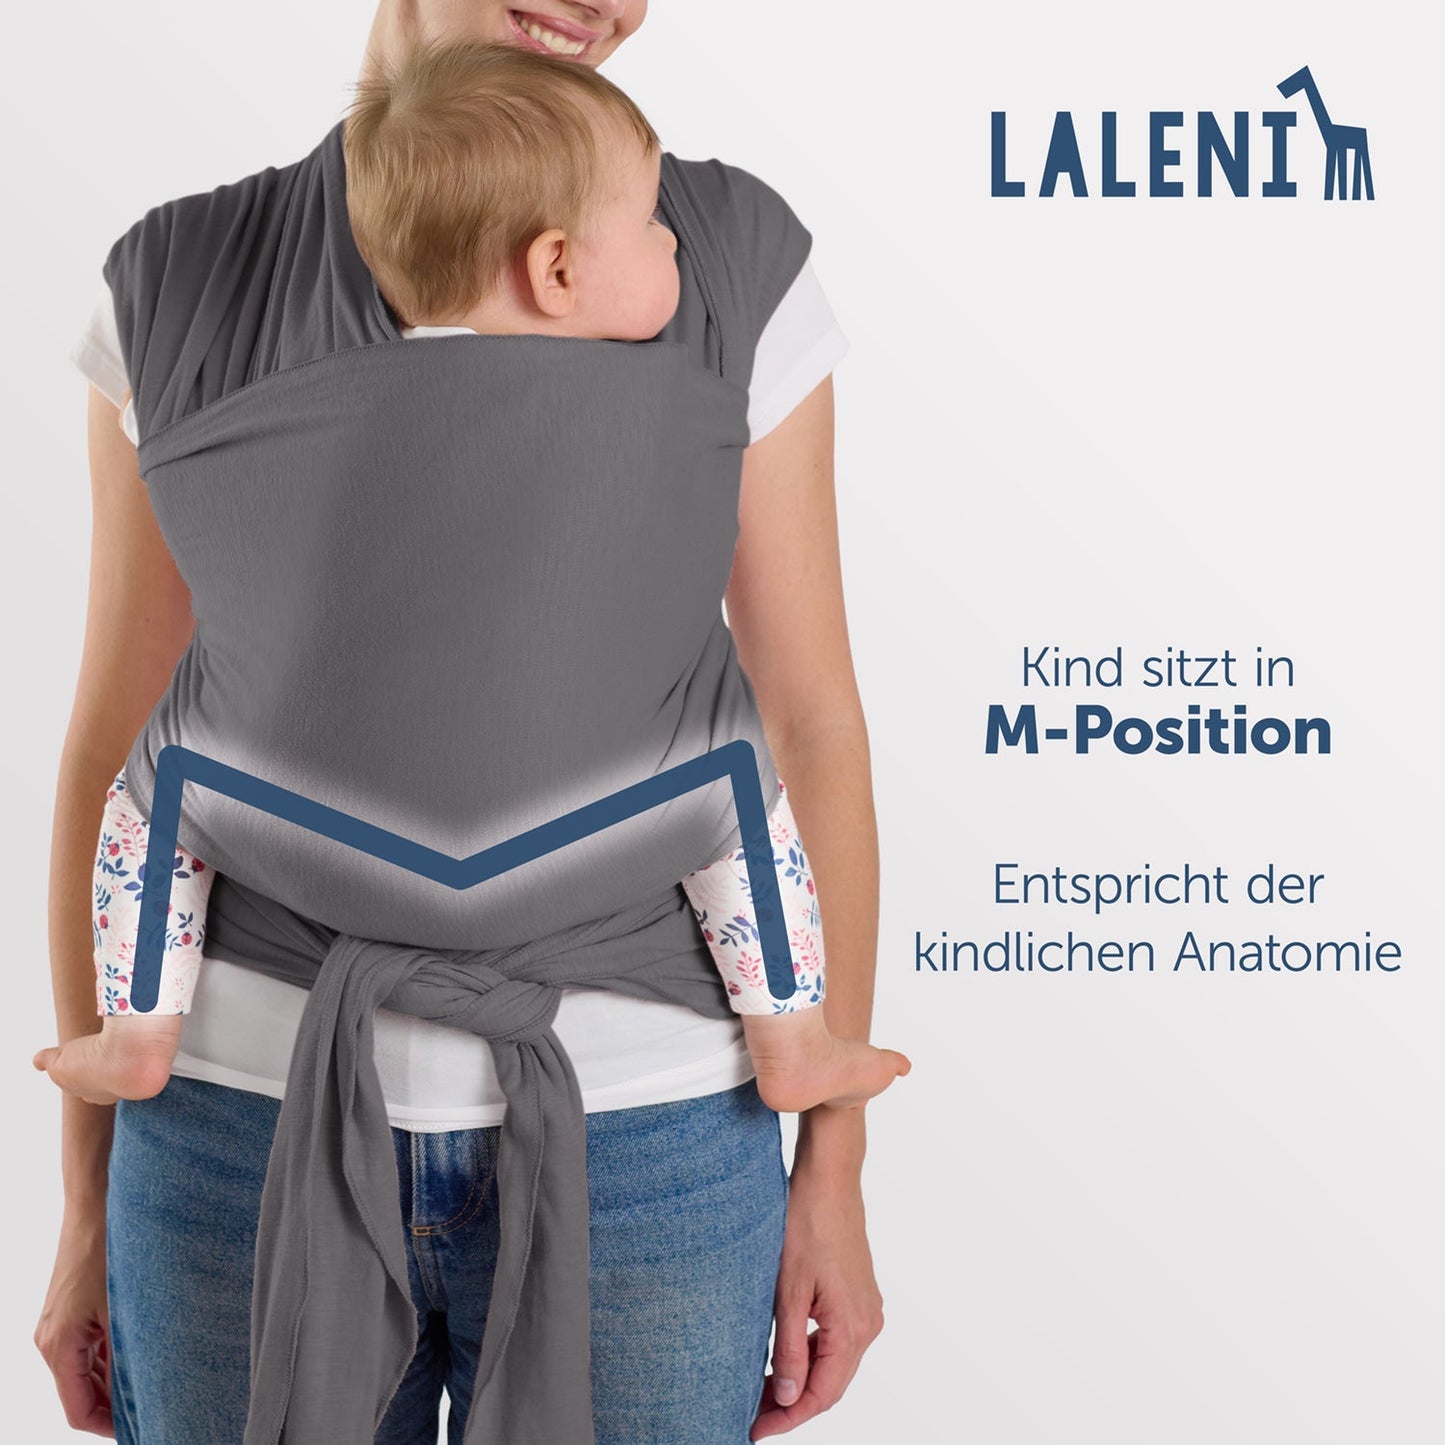 Rückenansicht einer Frau mit Baby in grauer Tragehilfe die M-Position und anatomische Korrektheit des Sitzes werden hervorgehoben.